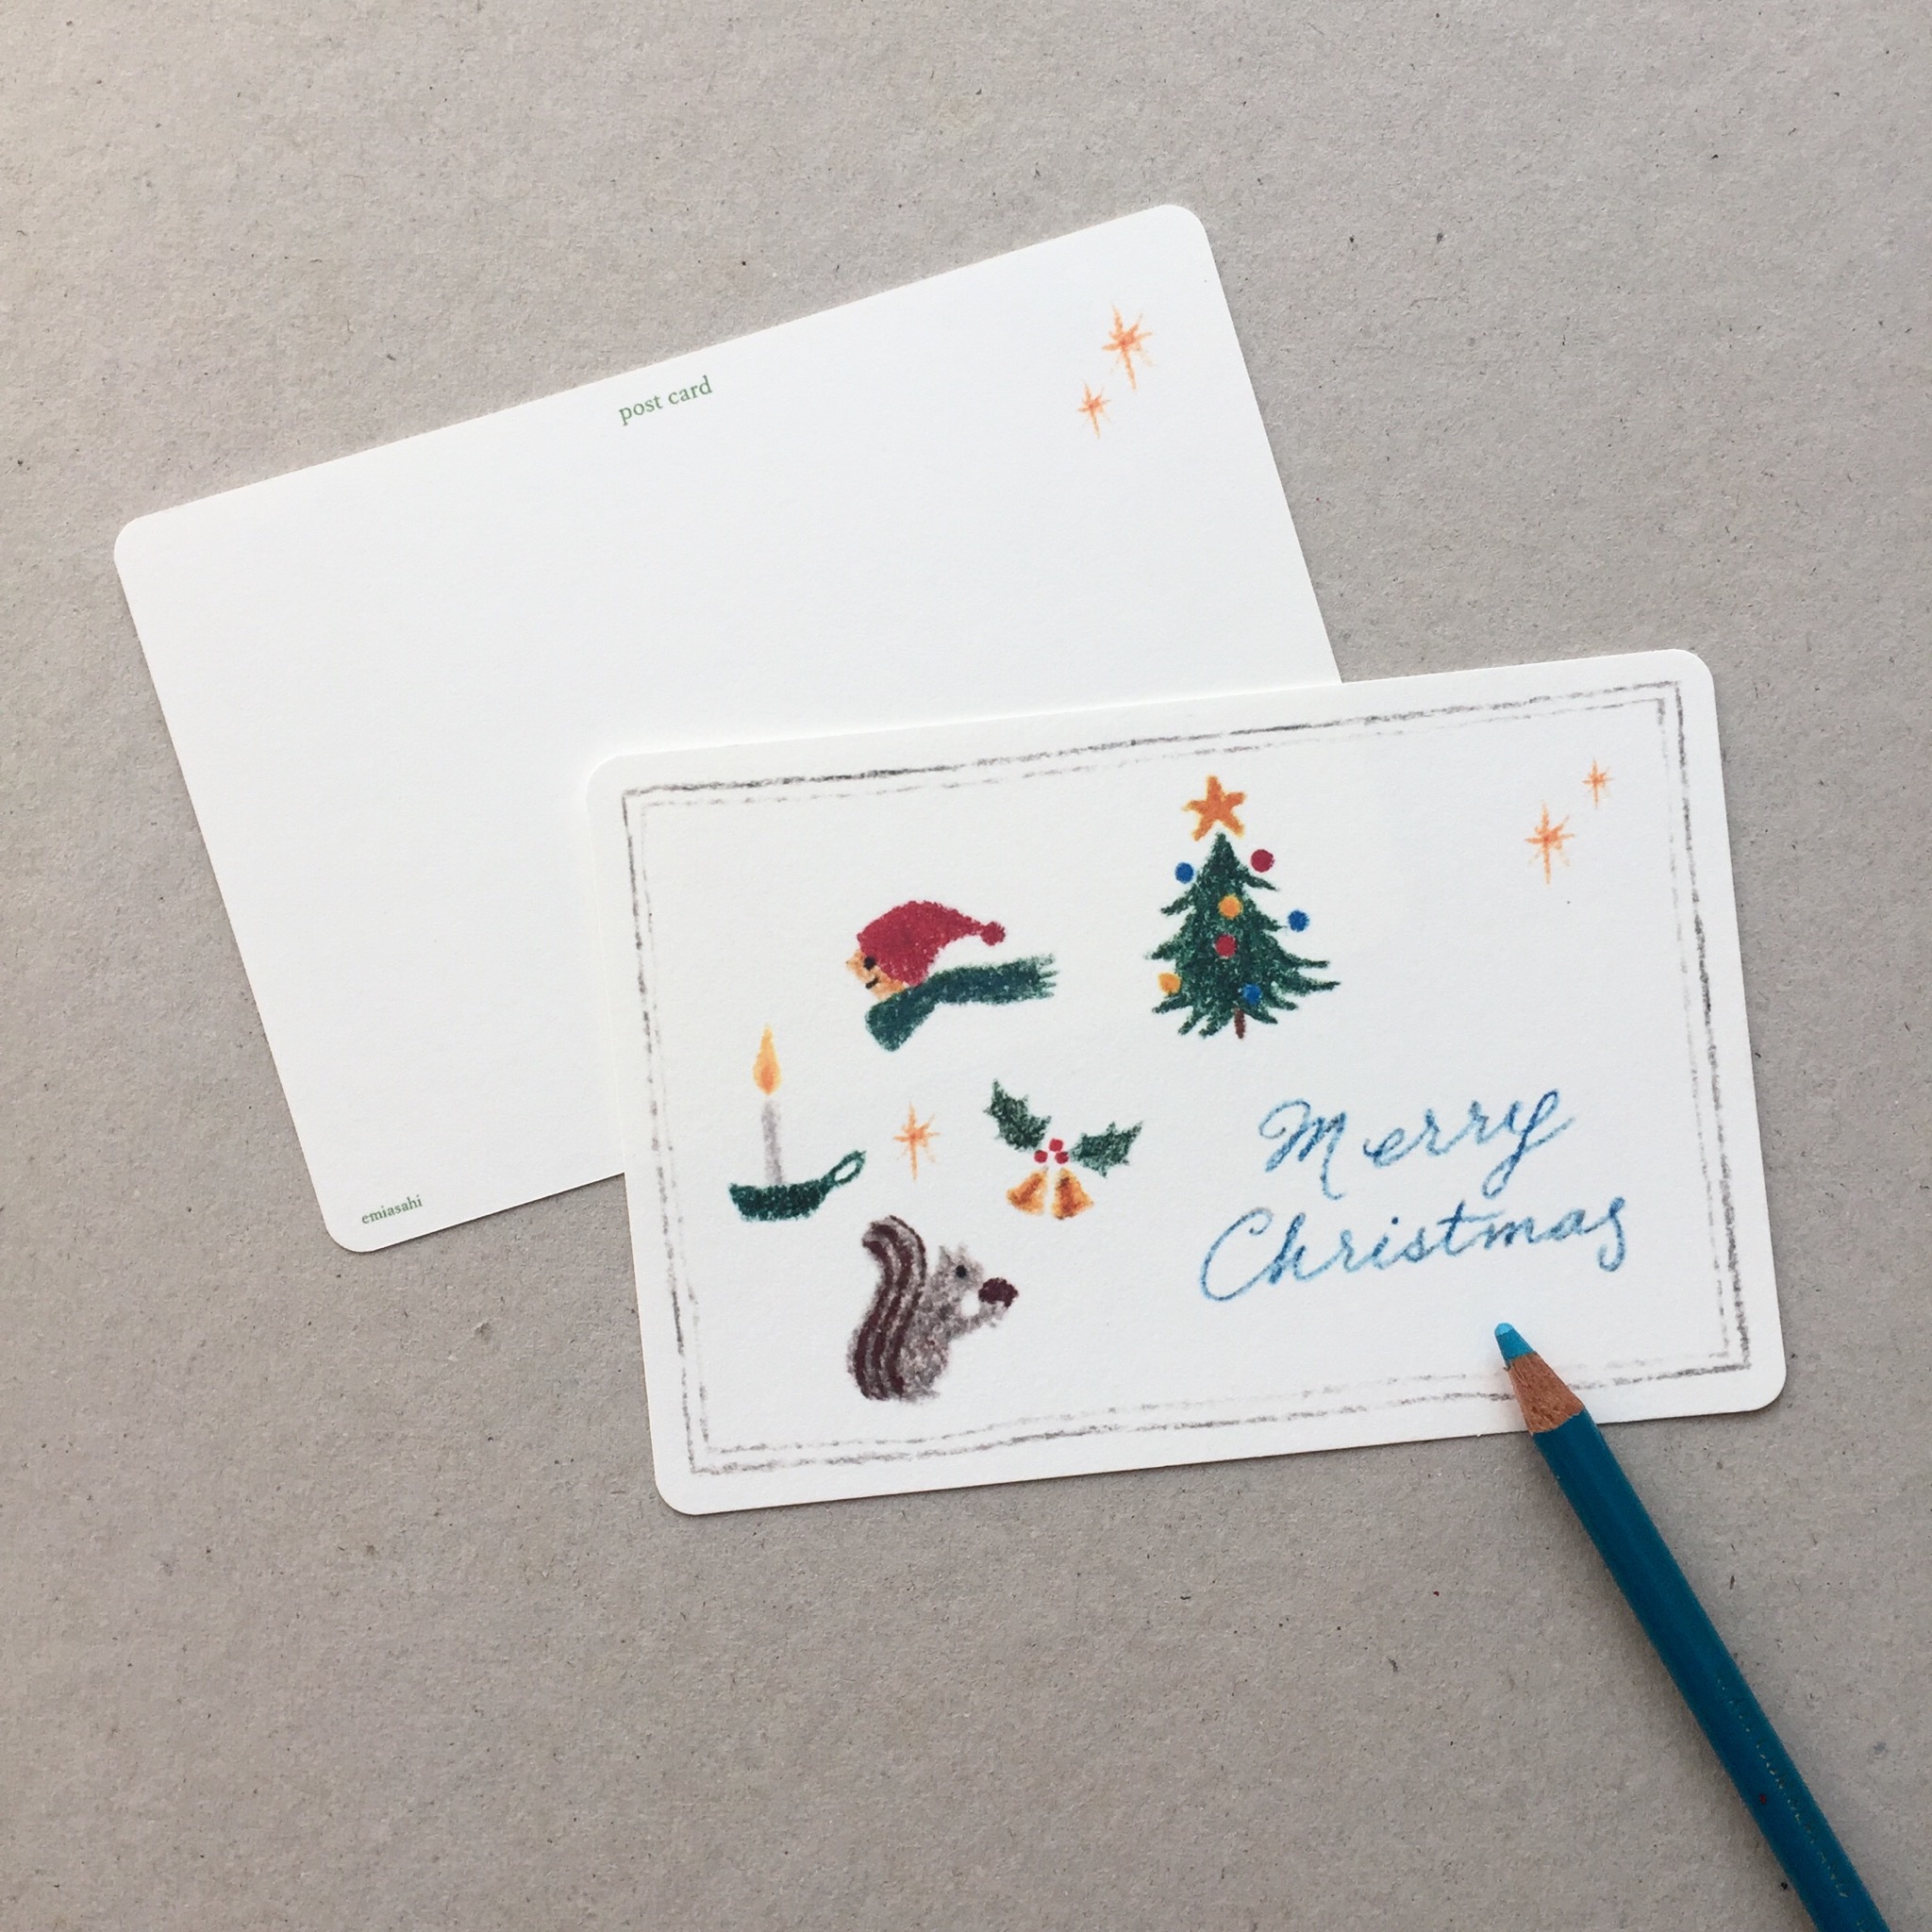 クリスマスのポストカード 5枚組 Iichi ハンドメイド クラフト作品 手仕事品の通販